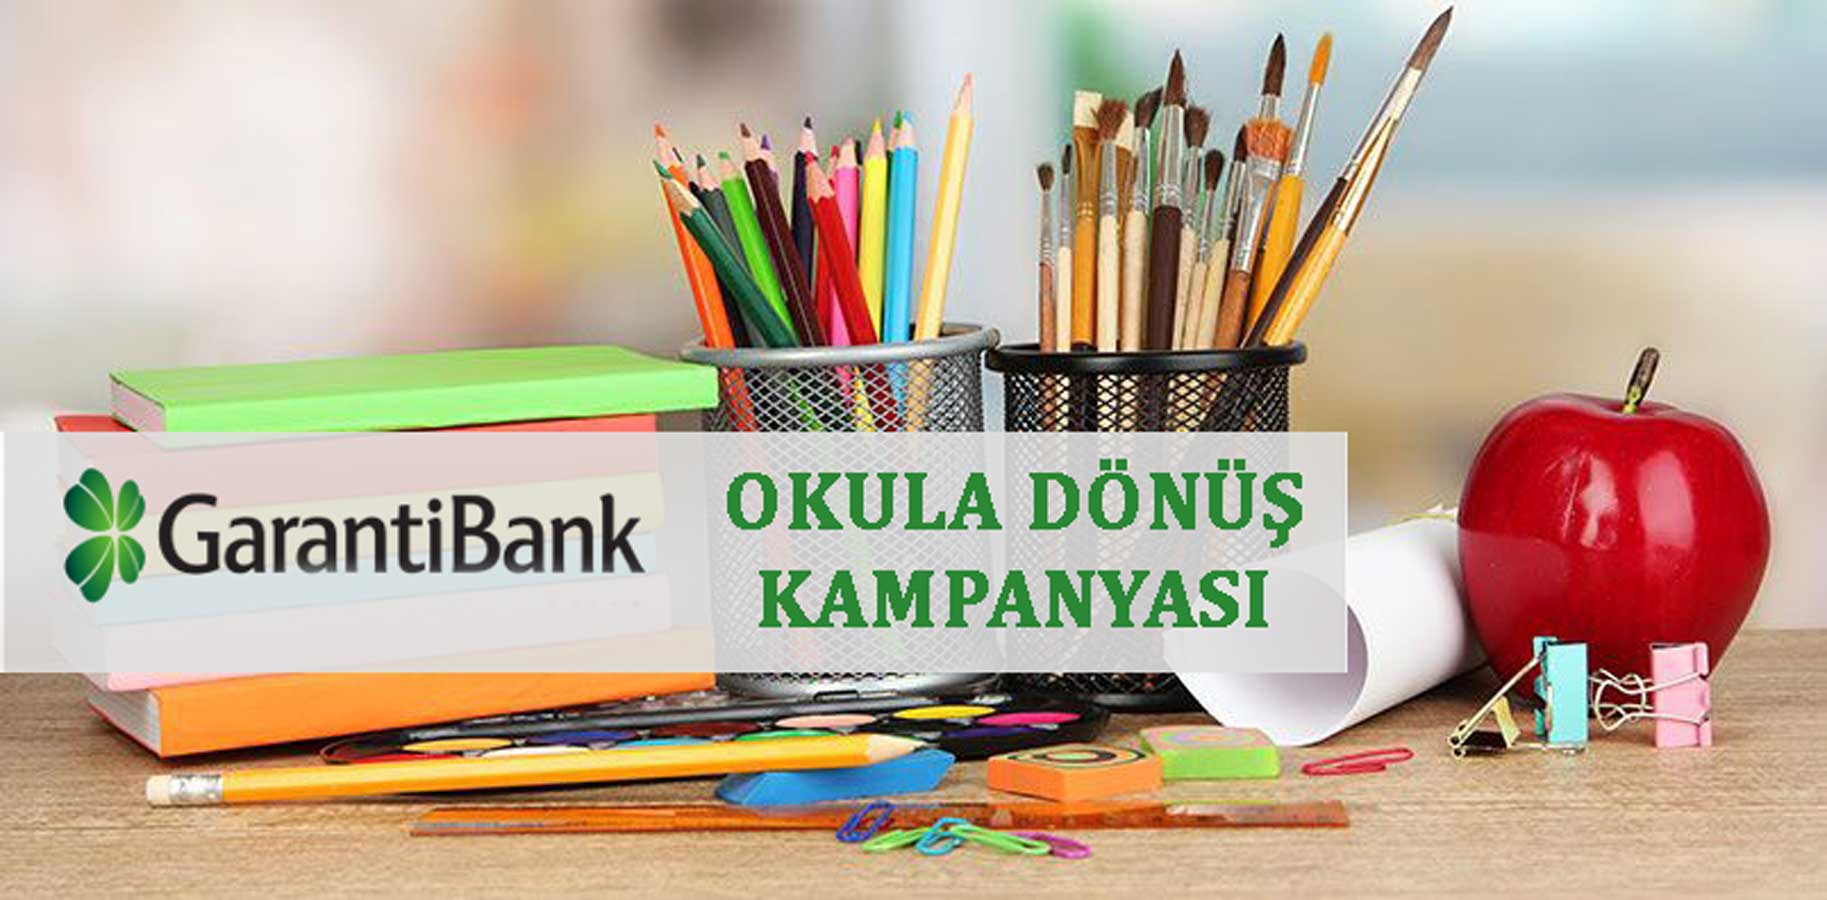 Garanti Bankası Okula Dönüş Kampanyası